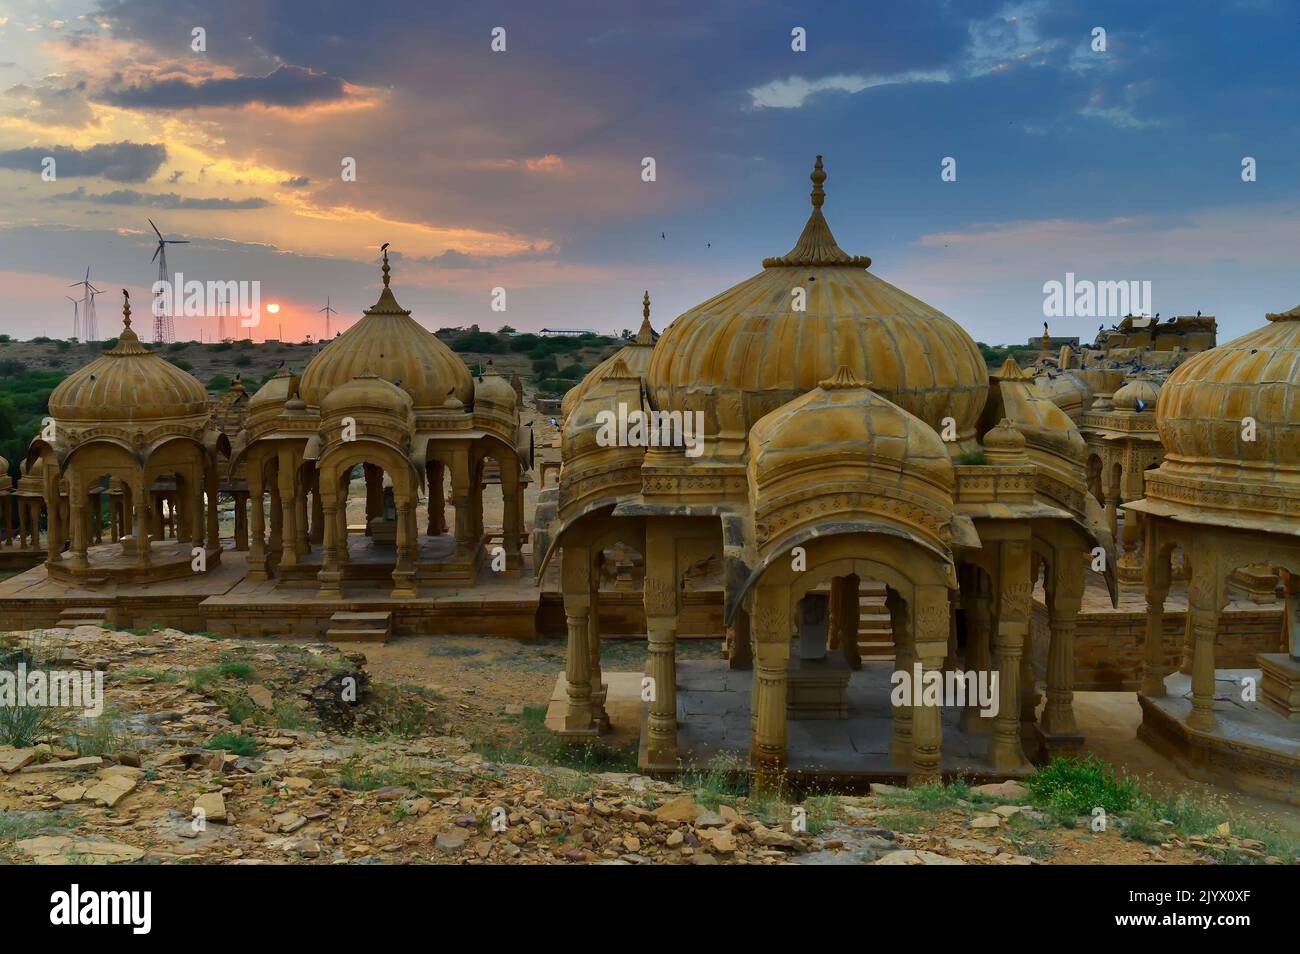 Bada Bagh ou Barabagh, signifie Big Garden, est un complexe de jardin à Jaisalmer, Rajasthan, Inde, pour les cénotaphes royaux de Maharajas ou Rois de Jaisalmer. Banque D'Images